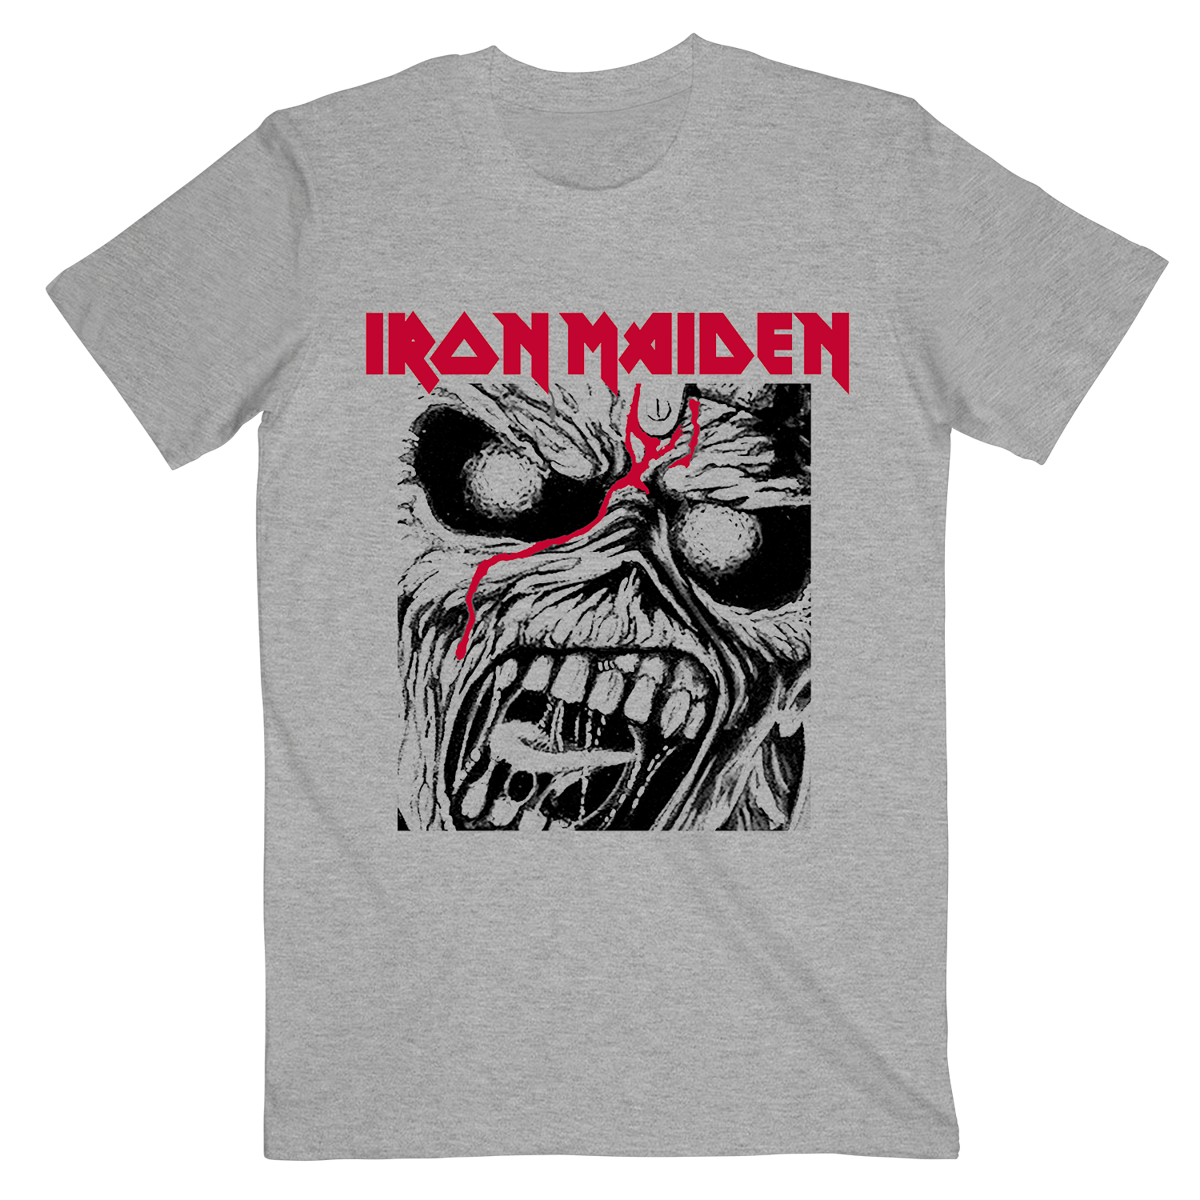 Iron Maiden - Página 10 Resize?u=aHR0cHM6Ly9lY29tbWVyY2UtcHVibGljLWFzc2V0cy5zdG9yYWdlLmdvb2dsZWFwaXMuY29tL2ZmY2FmYjlkLTMxNjAtNDc2My1iOTUwLWQwYzYxOGQyYzFkNy8yMDIzLzUvMTIvMTYvMzEvZmFlOTY1OTAtODNkYS00NTc2LWFlZjctM2EzNWZiNzg5ODdh&mode=contain&width=1200&v=1